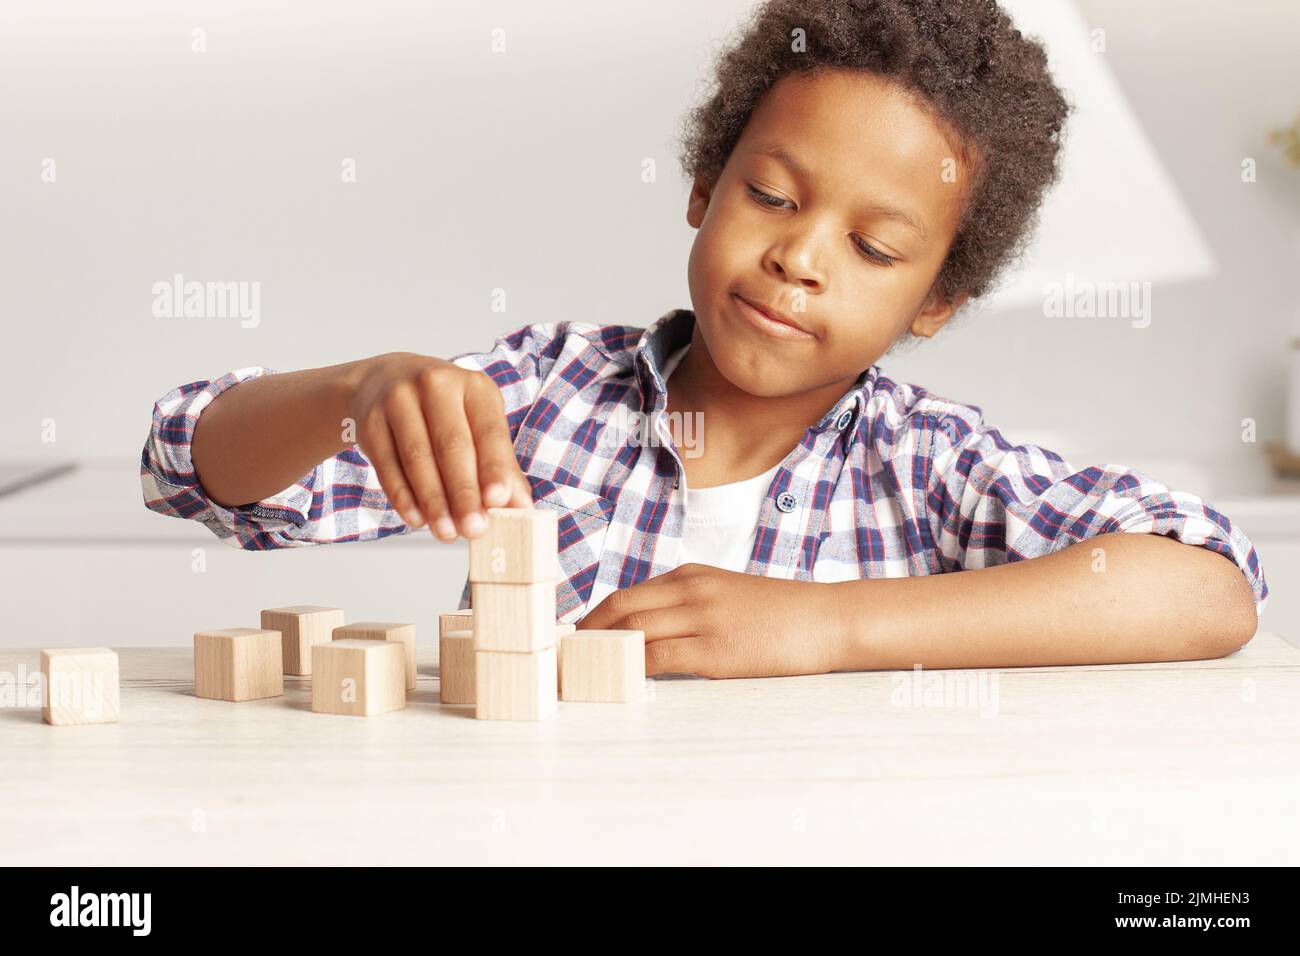 Niño afroamericano niño pequeño eligiendo cubo de bloque de madera juguete apilado sin gráficos Foto de stock